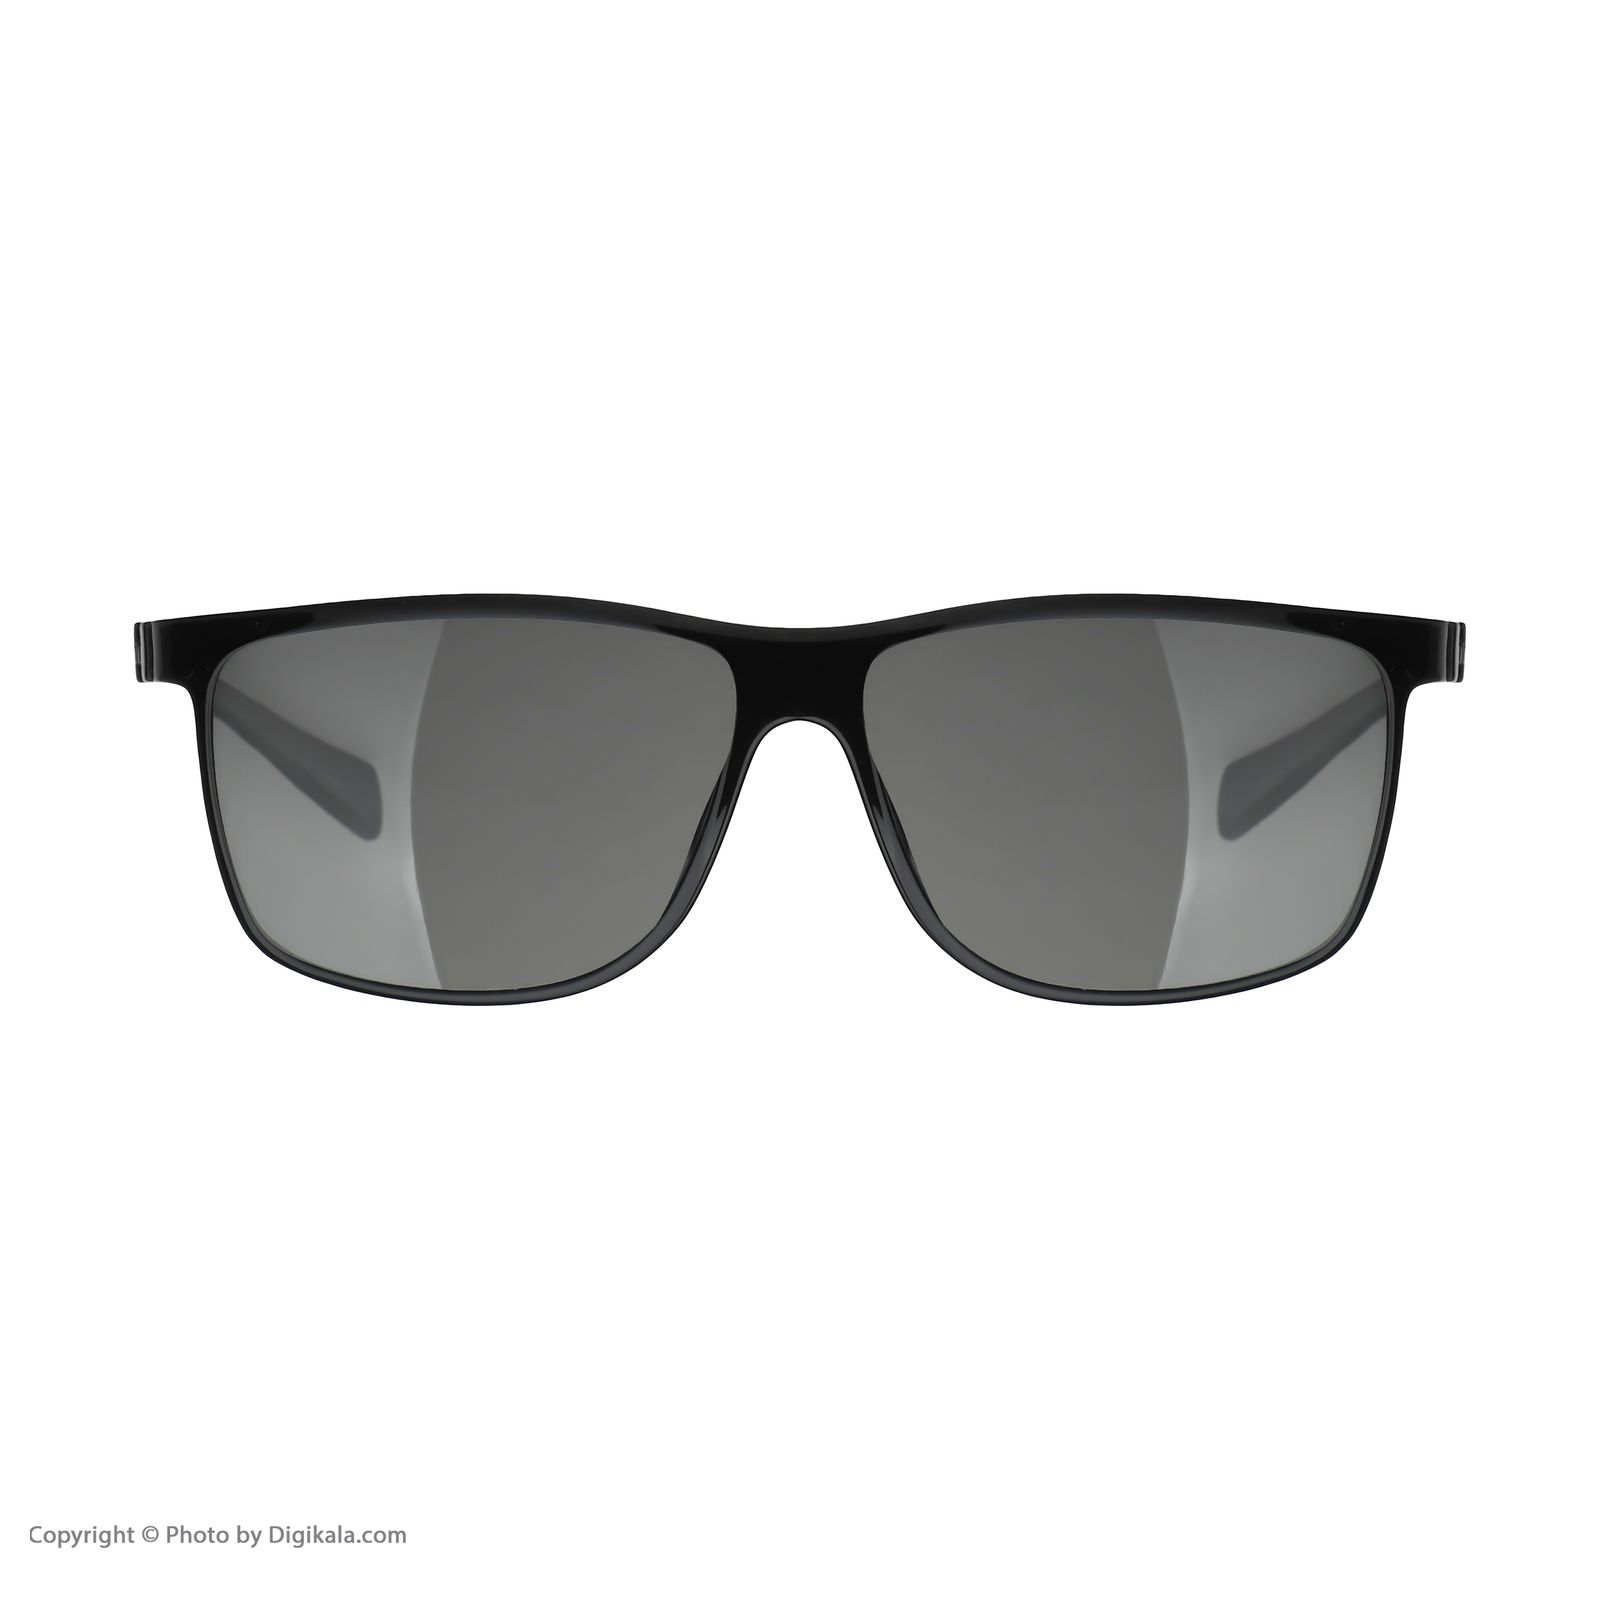 عینک آفتابی مردانه کلارک بای تروی کولیزوم مدل S4018C3 -  - 2